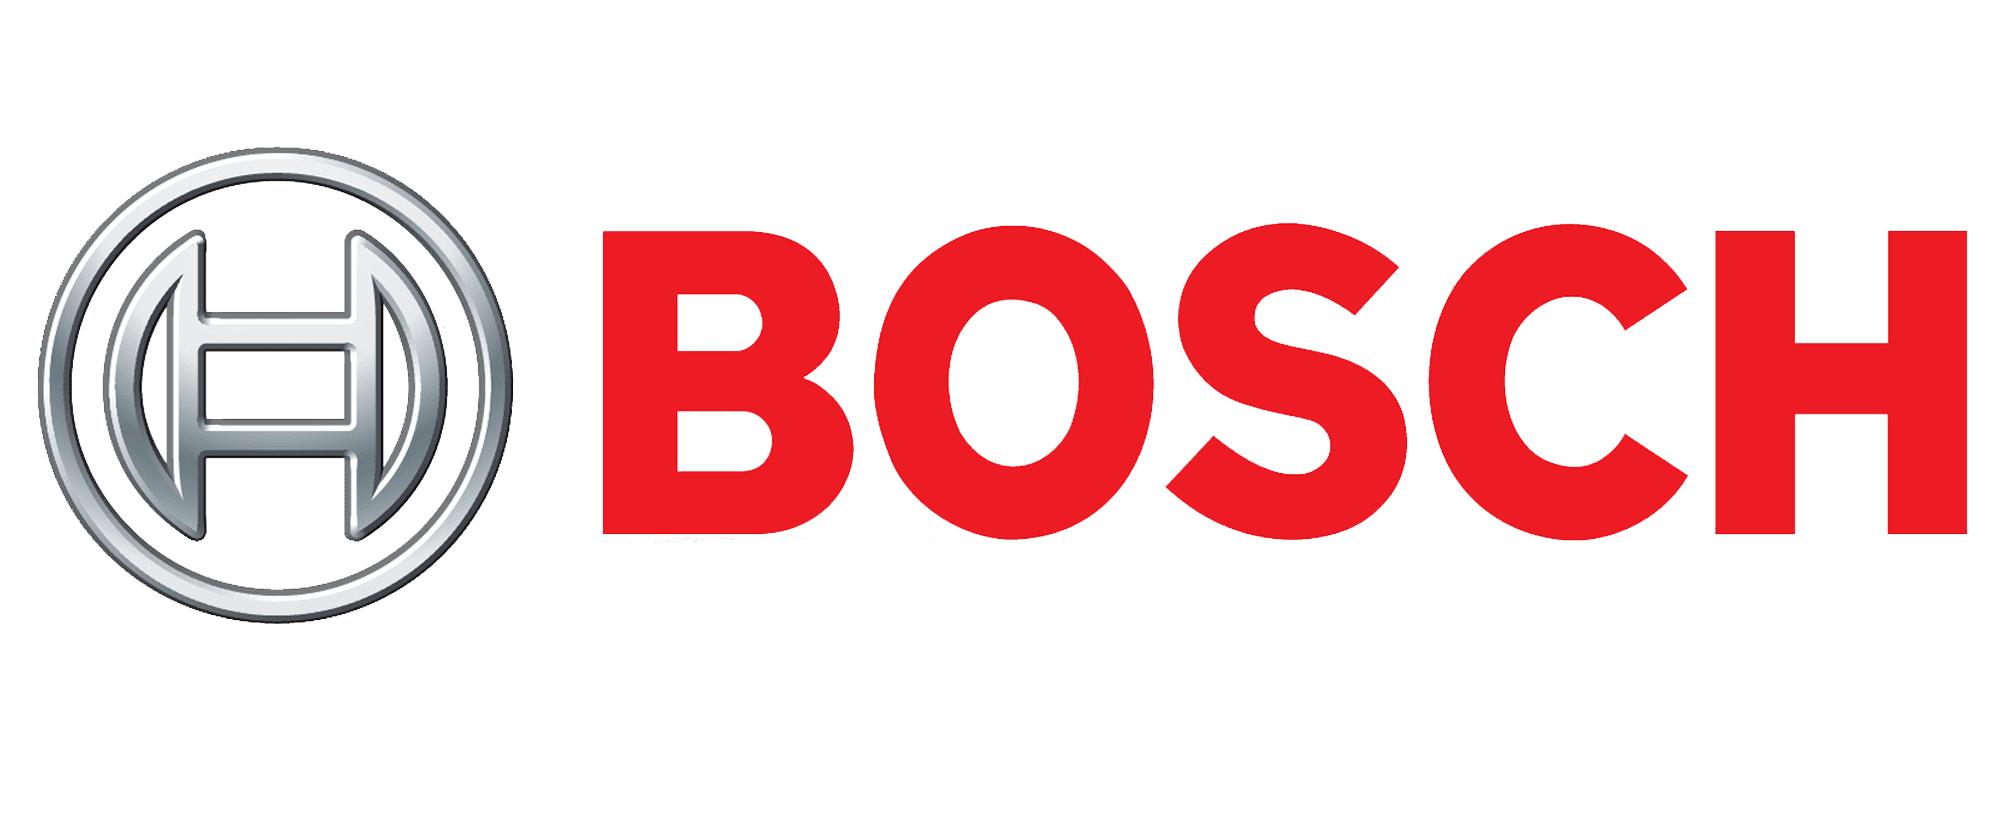 Логотип BOSCH (Бош)